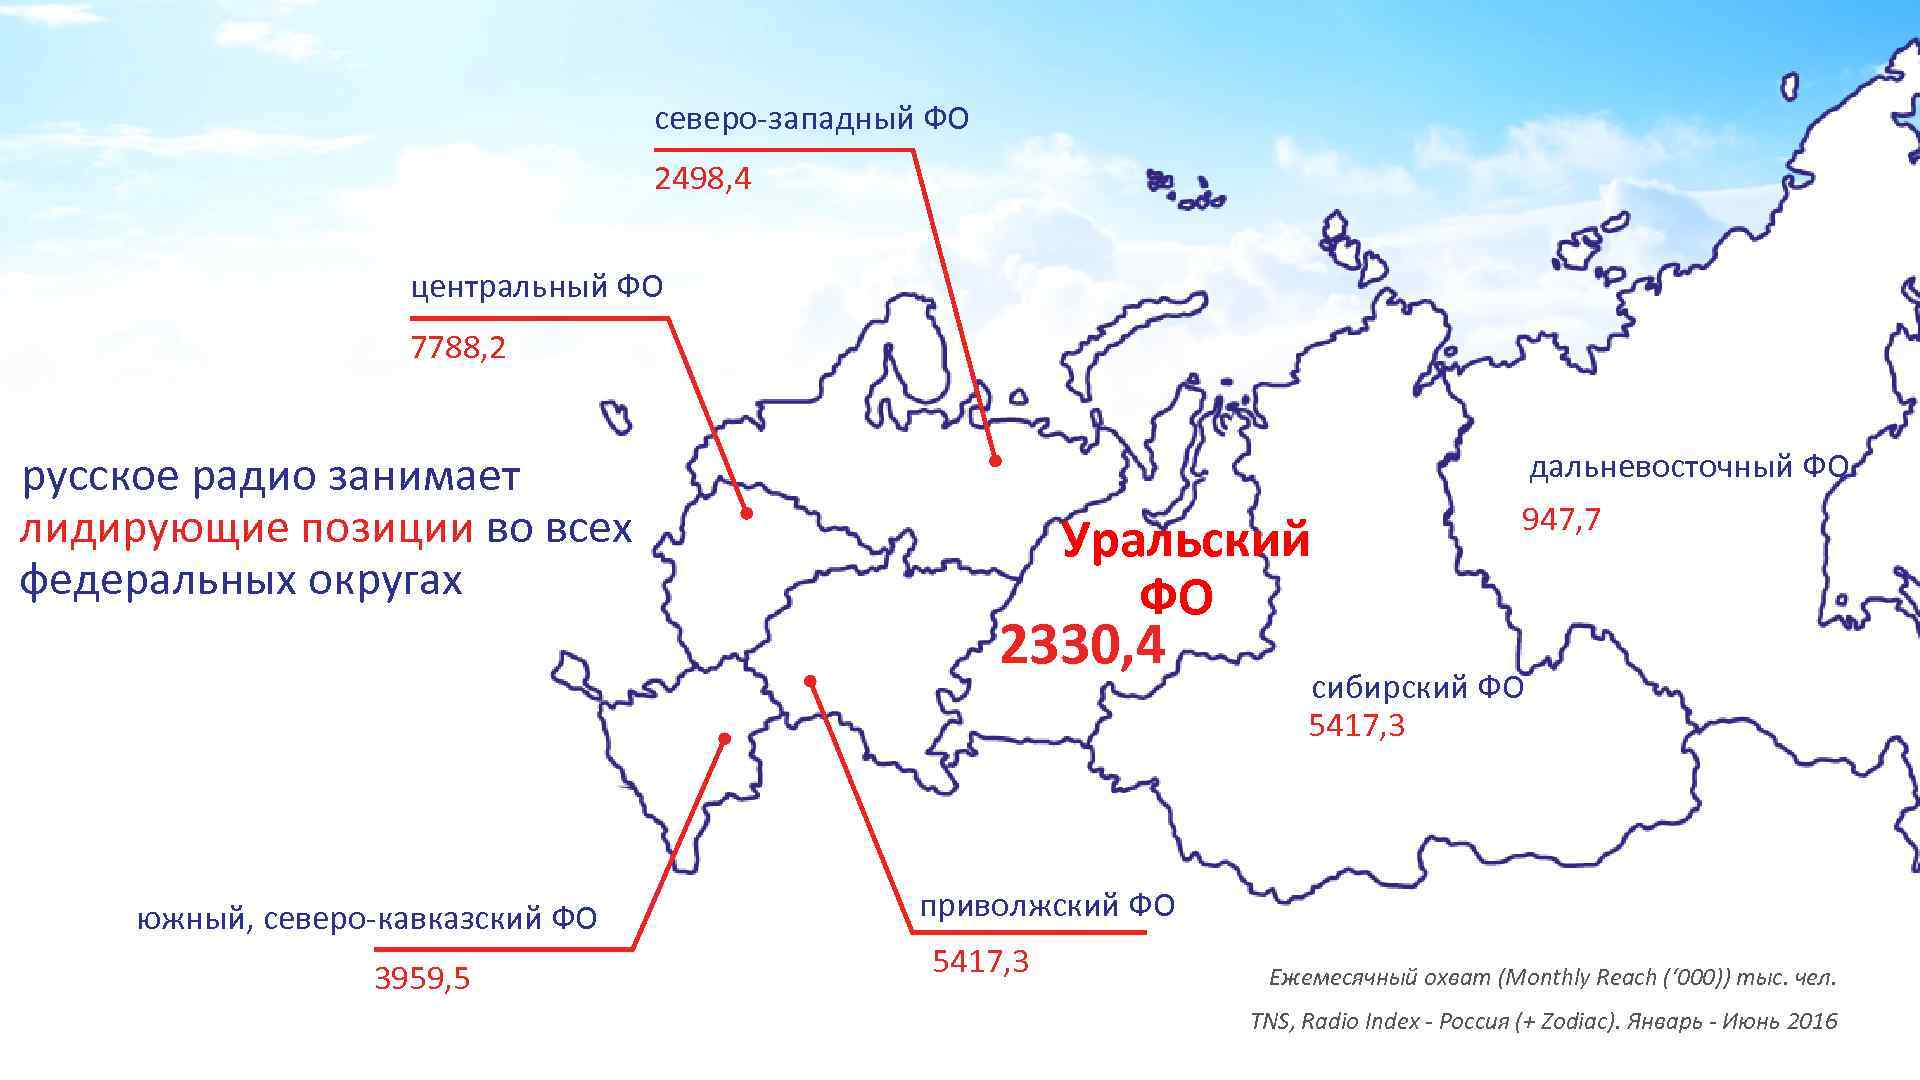 северо-западный ФО 2498, 4 центральный ФО 7788, 2 русское радио занимает лидирующие позиции во